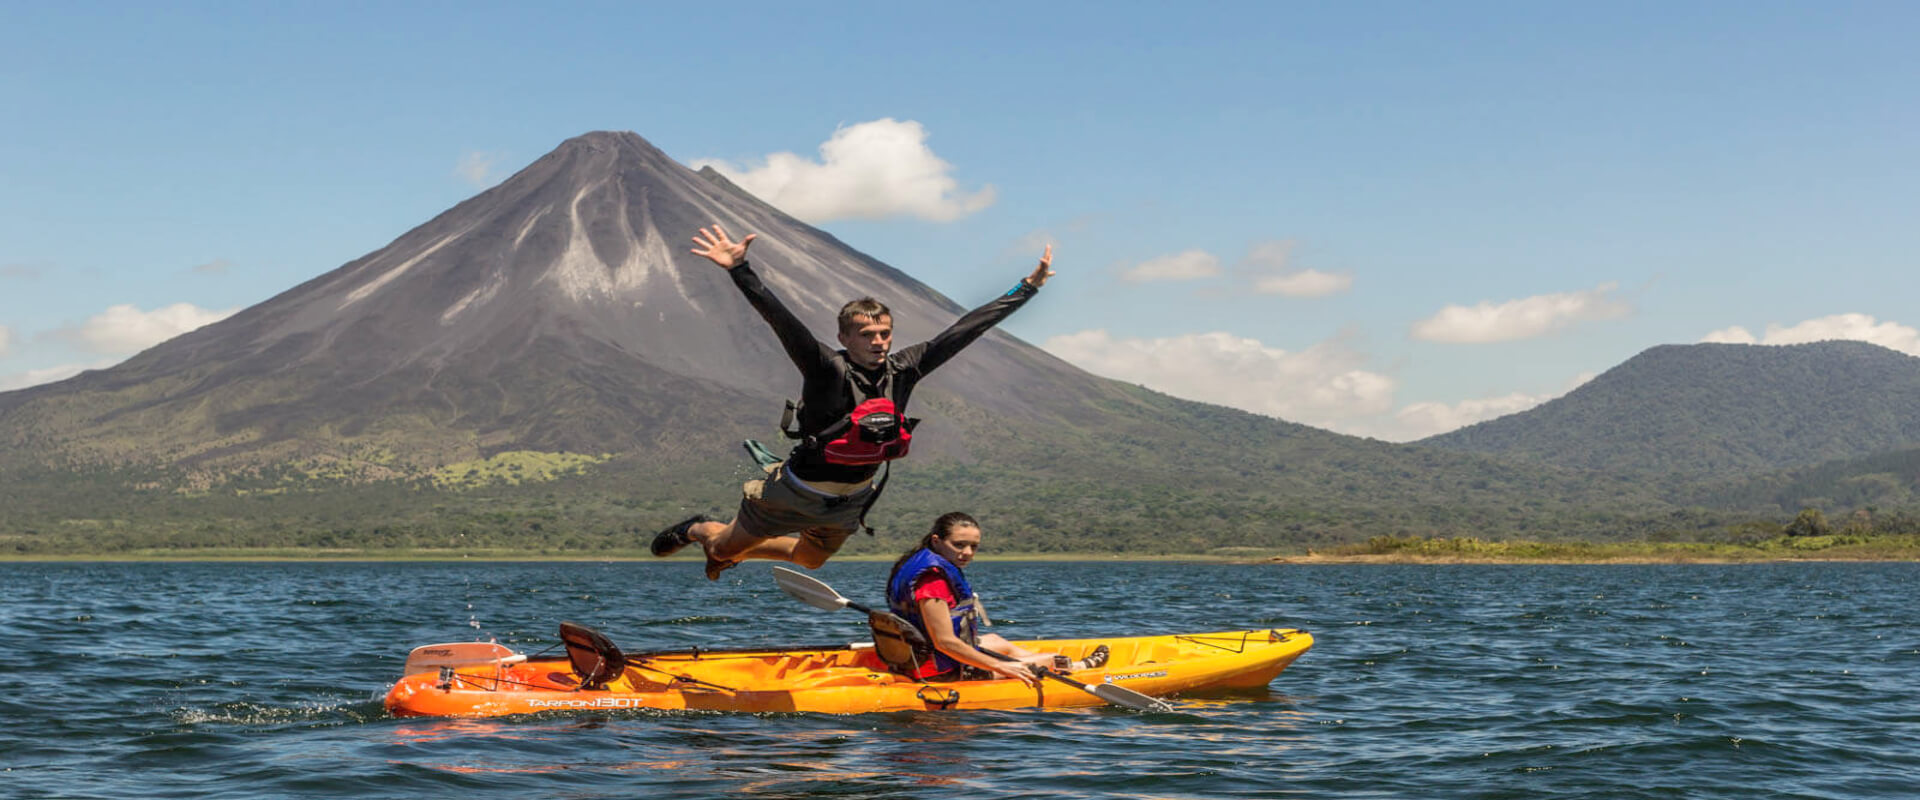 Kayaking in Lake Arenal | Costa Rica Jade Tours